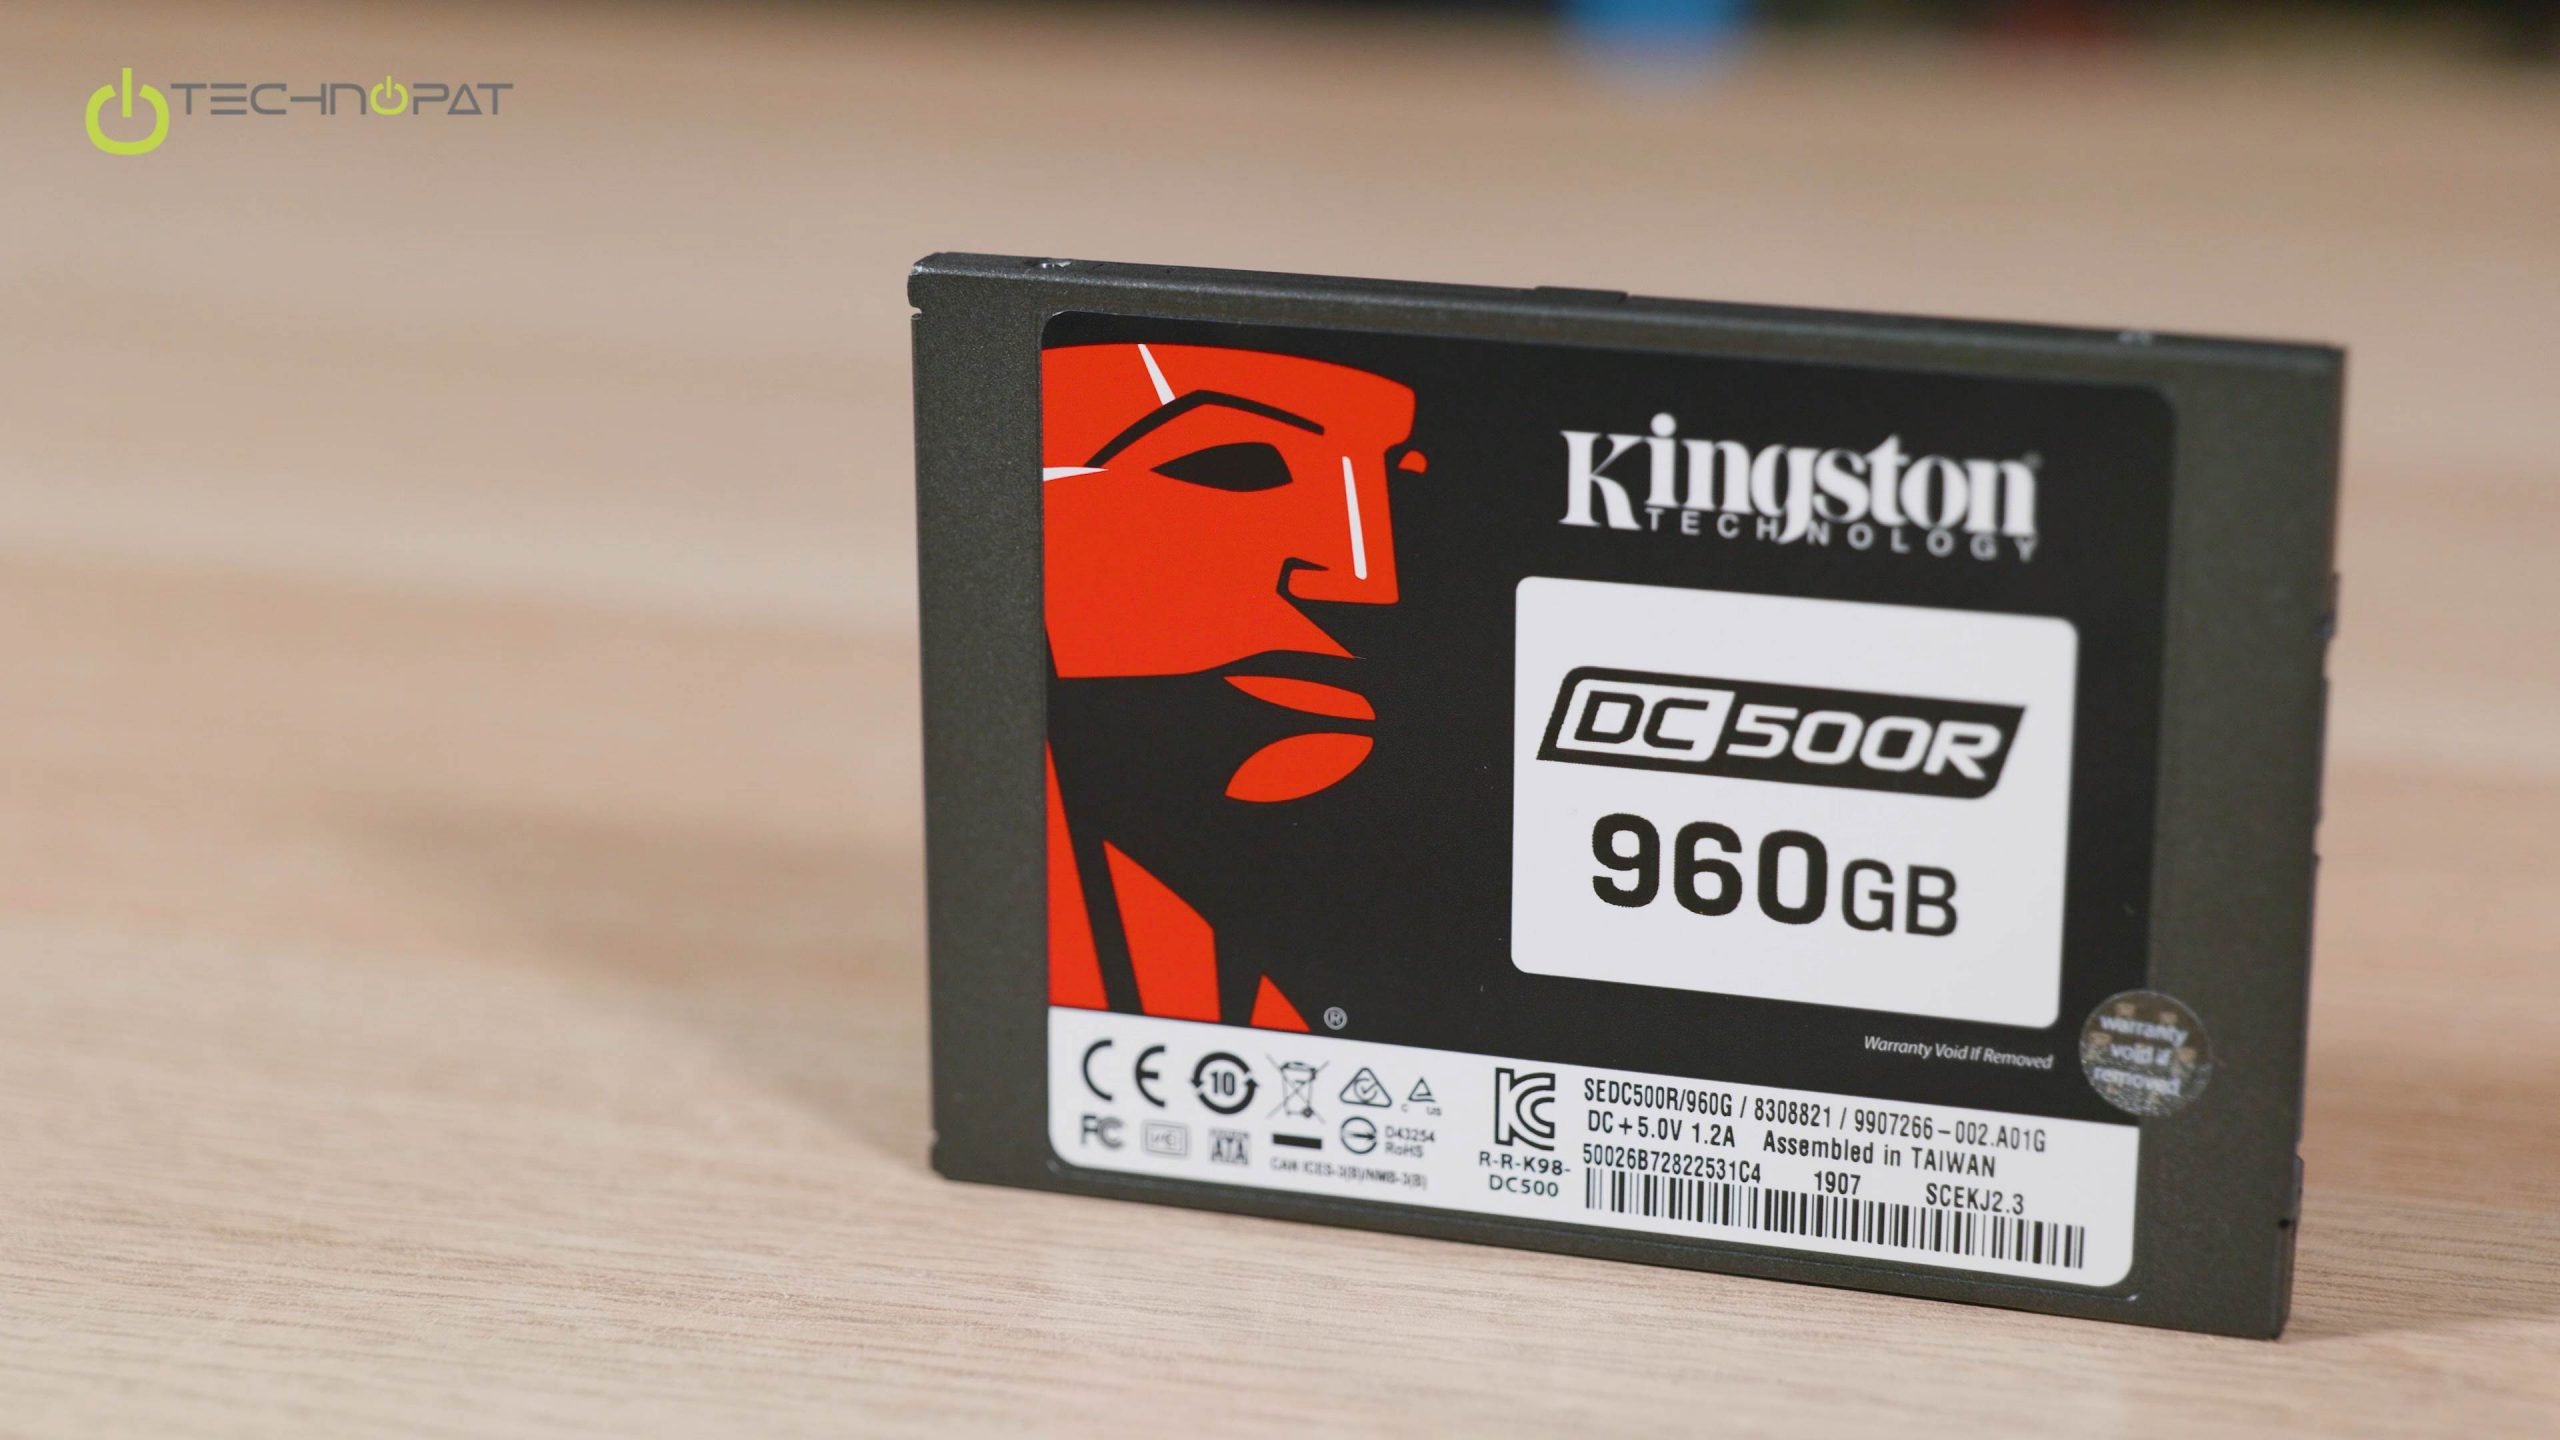 Kingston DC500R SSD İncelemesi - Technopat